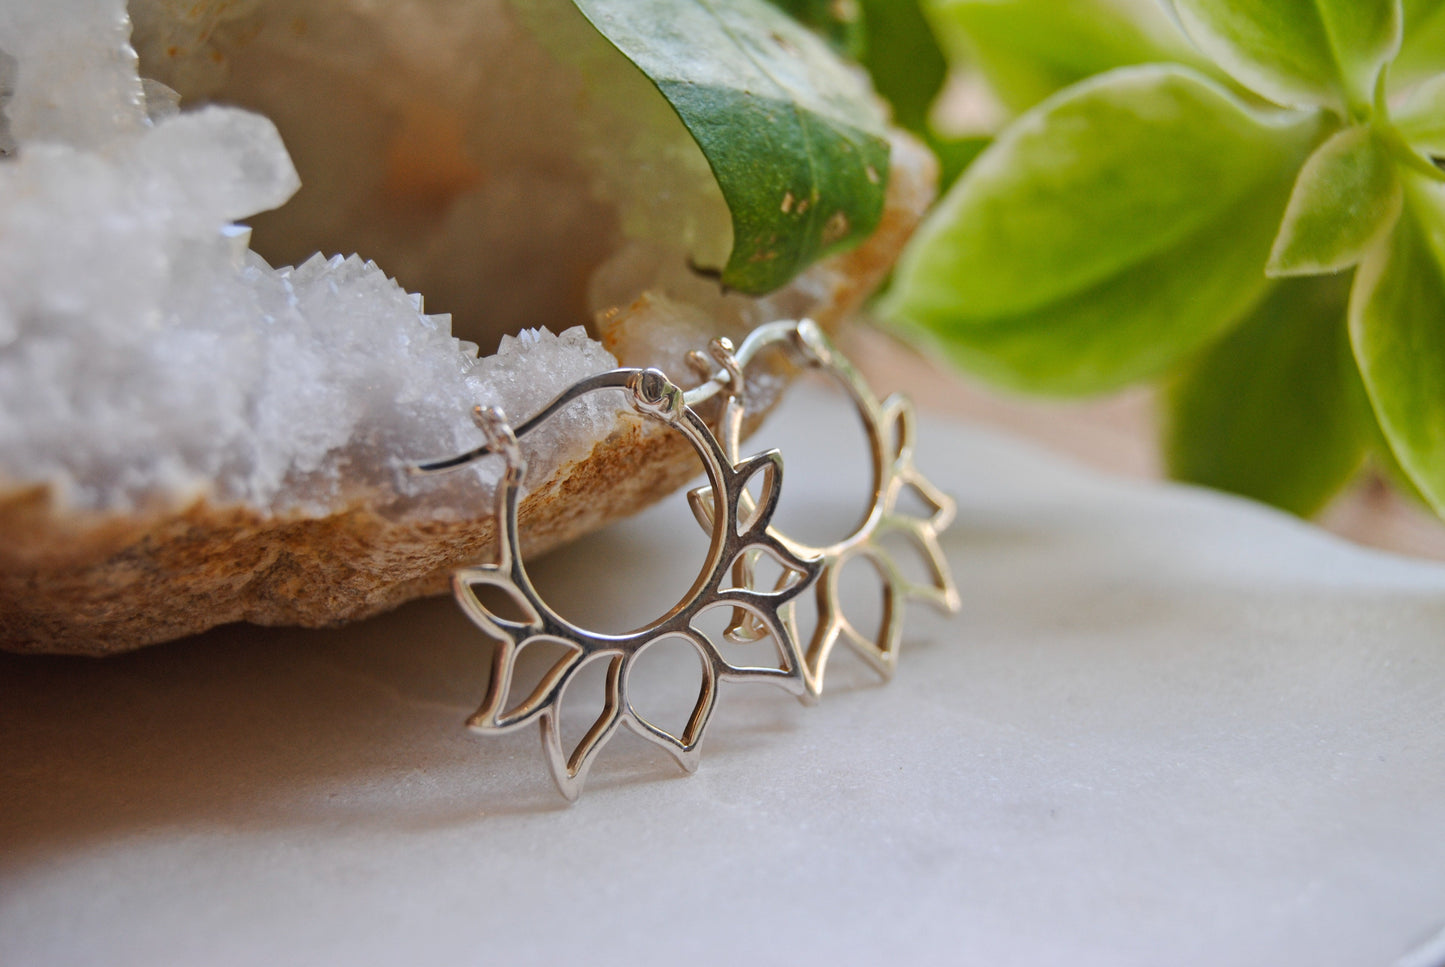 Sterling silver lotus earrings